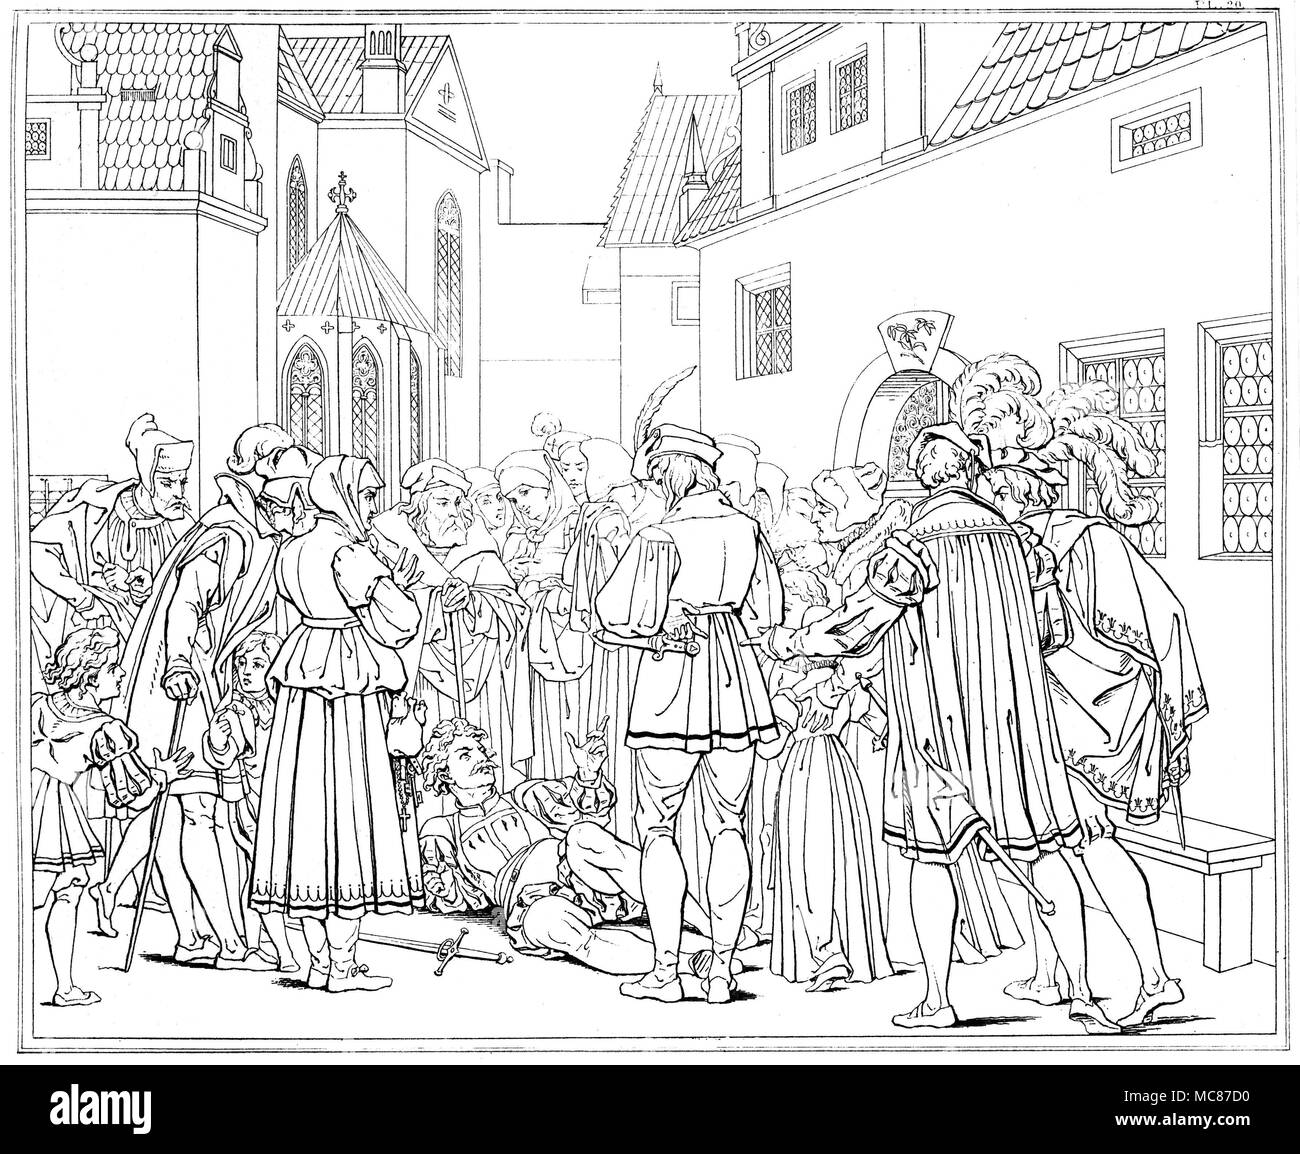 Dämonen - FAUST - VALENTINE Valentine auf den Punkt des Todes Vorwürfe Margaret für Ihr unmoralisches Verhalten. In der Retsch Serie von Twenty-Six umrissen, die zur Illustration von Goethes Tragödie "Faust" von Henry Mose graviert, in 1820, ist es Gravur 20. [Gravur Nr. 23 in der Reihe, Umrisse Goethes Faust. Gezeichnet von Moritz Retsch, 1836.] Es waren zwei verschiedene frühe Ausgaben des Retsch Serie von Zeichnungen zu Goethes Faust spielen. Die feinste war Umrisse Goethes Faust. Gezeichnet von Moritz Retsch, 1836 edition, sowohl in Stuttgart und Augsburg gedruckt. Es gab 29 Platten in diesem Stockfoto